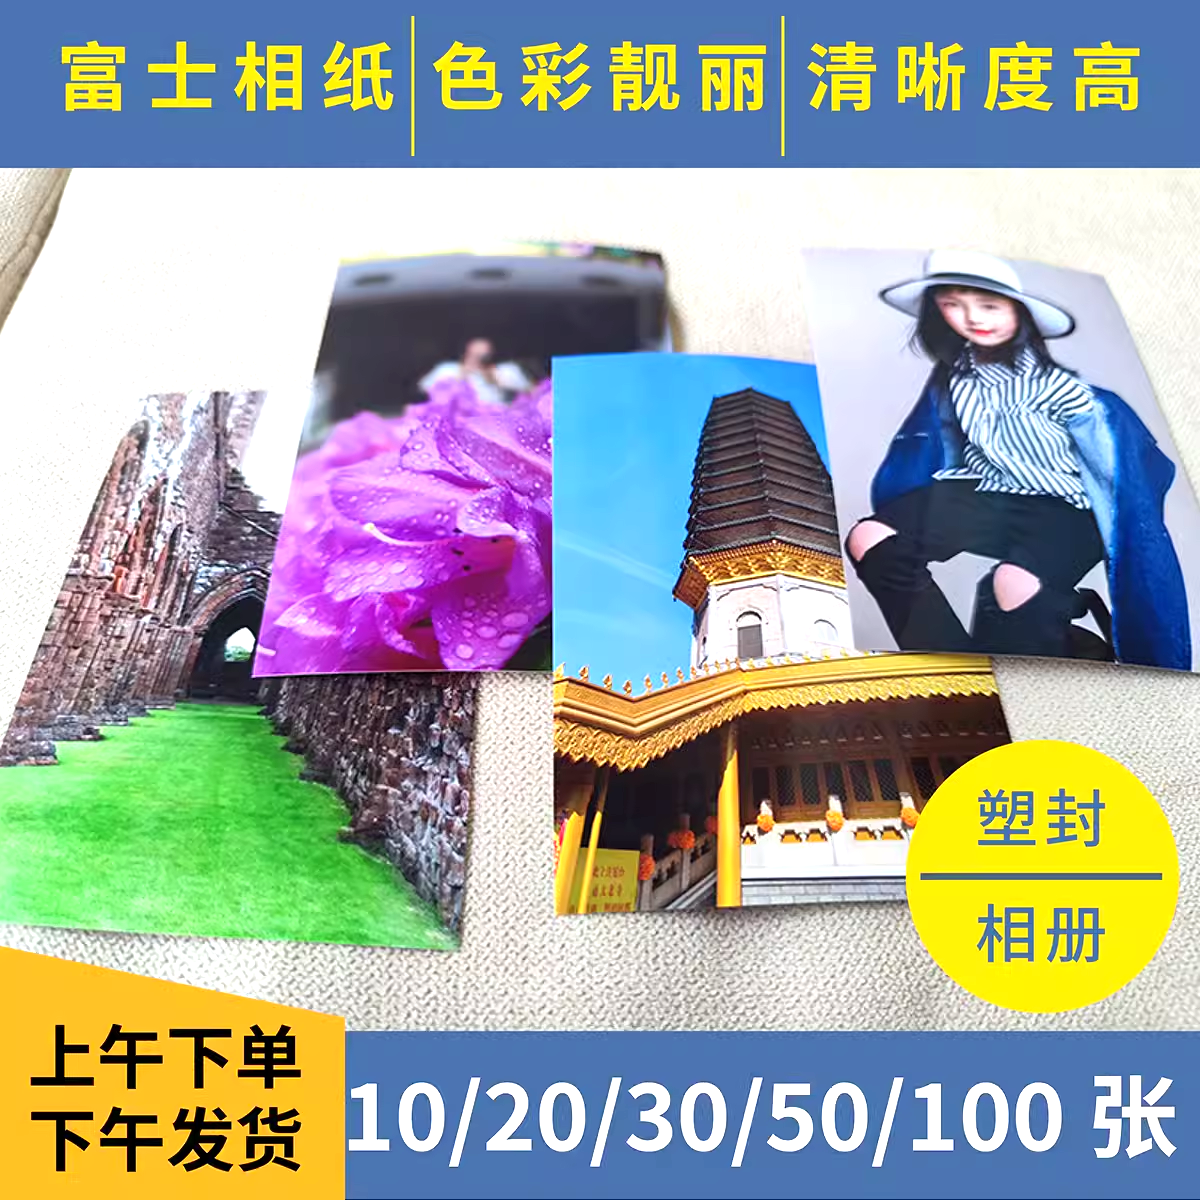 洗照片打印6寸100张五寸七寸高质量送相册免费塑封富士北京发货